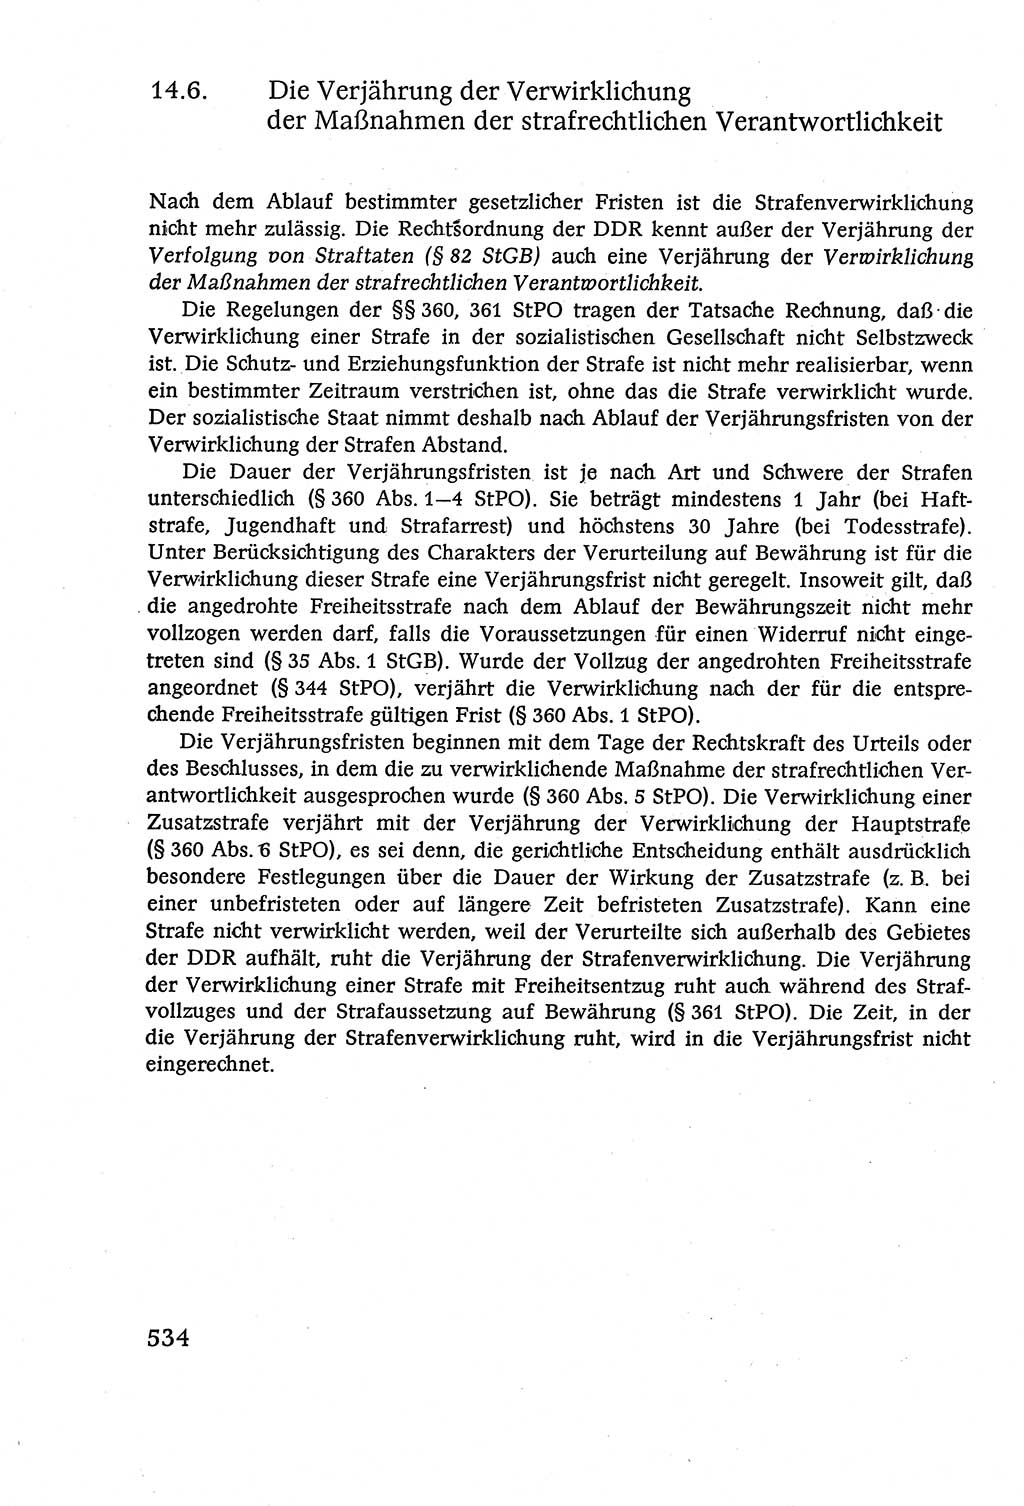 Strafverfahrensrecht [Deutsche Demokratische Republik (DDR)], Lehrbuch 1977, Seite 534 (Strafverf.-R. DDR Lb. 1977, S. 534)